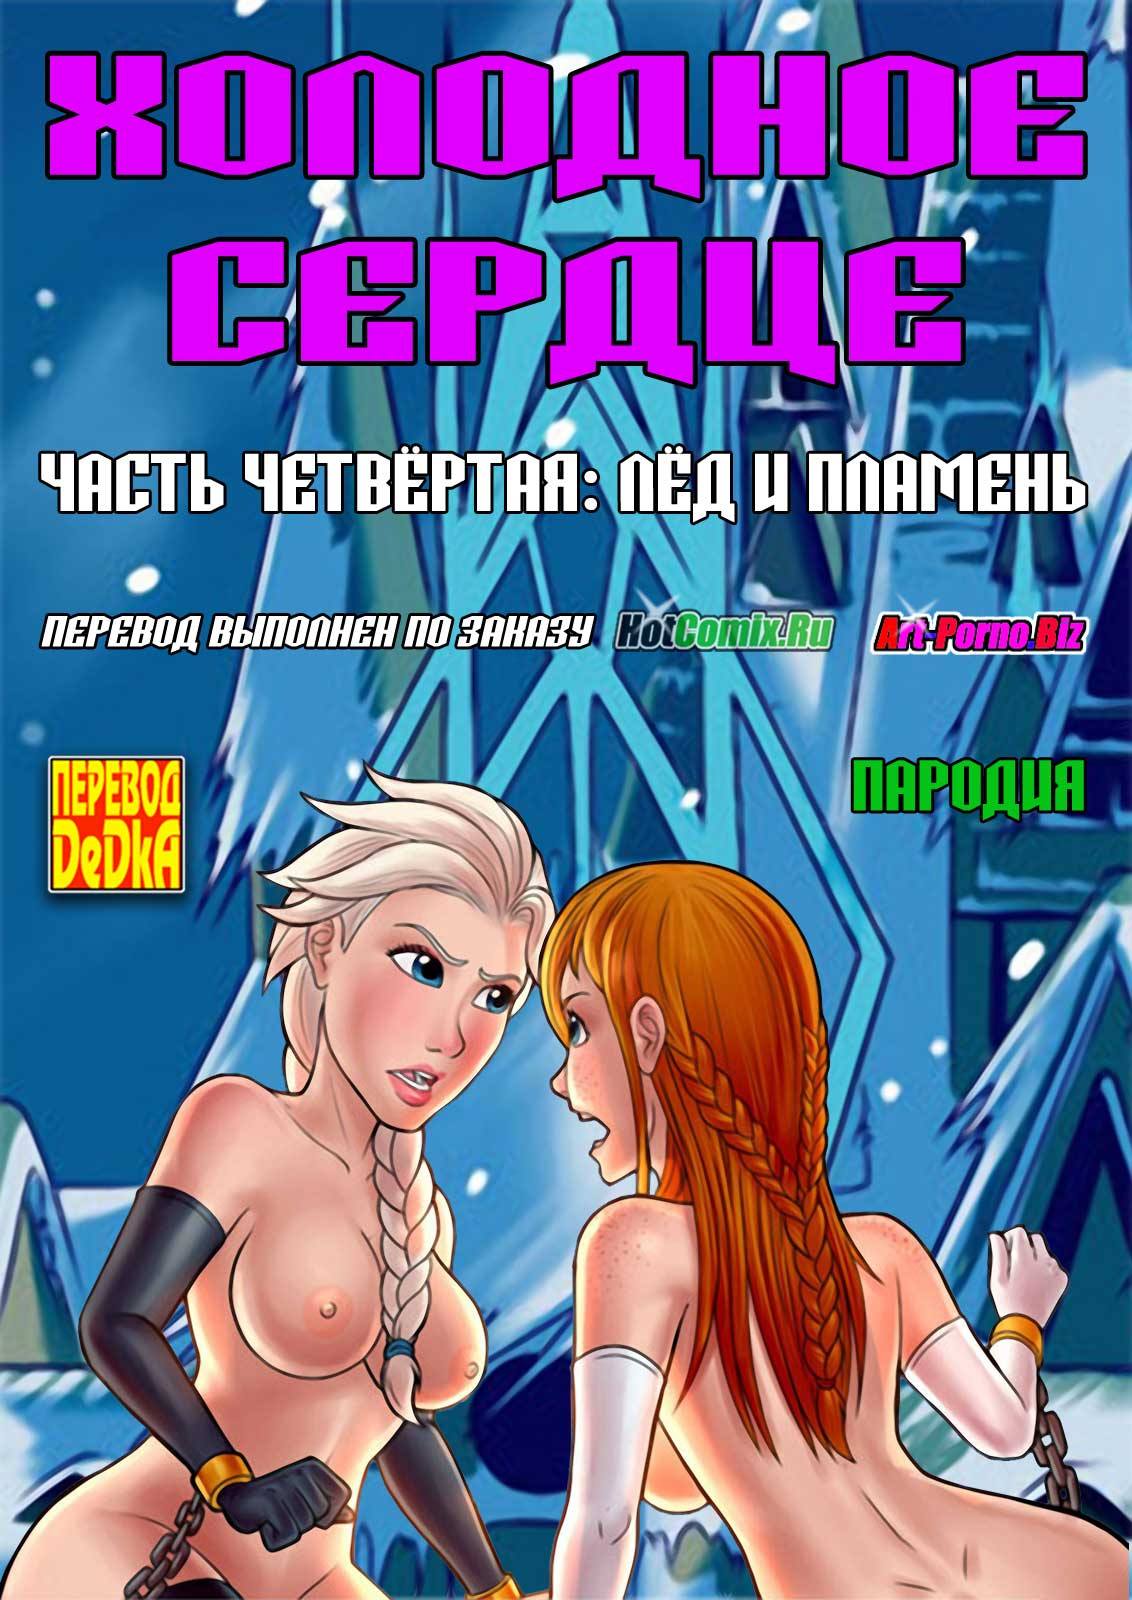 бесплатные лесби порнофильмы с переводом (99) фото